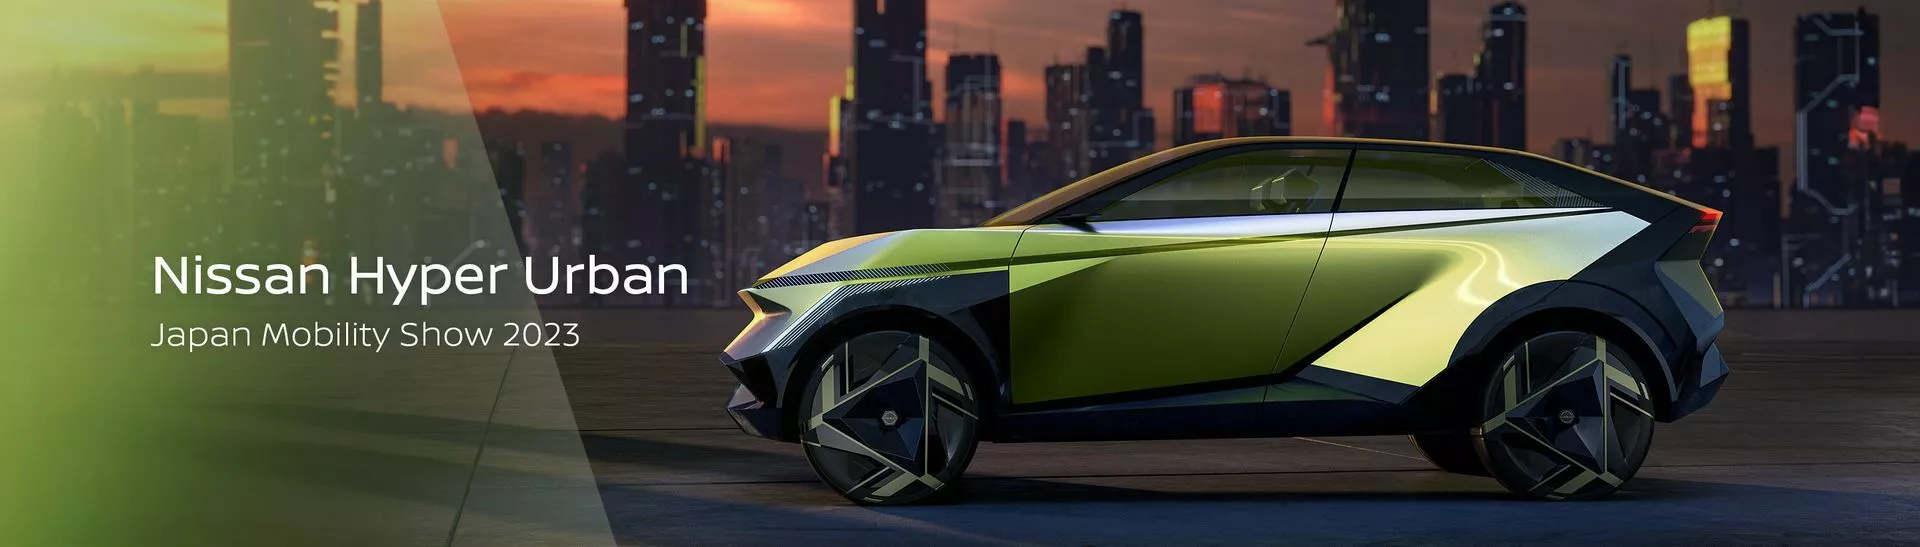 نيسان هايبر اوربان هي SUV اختبارية جديدة تجسد المستقبل الكهربائي للعلامة 7